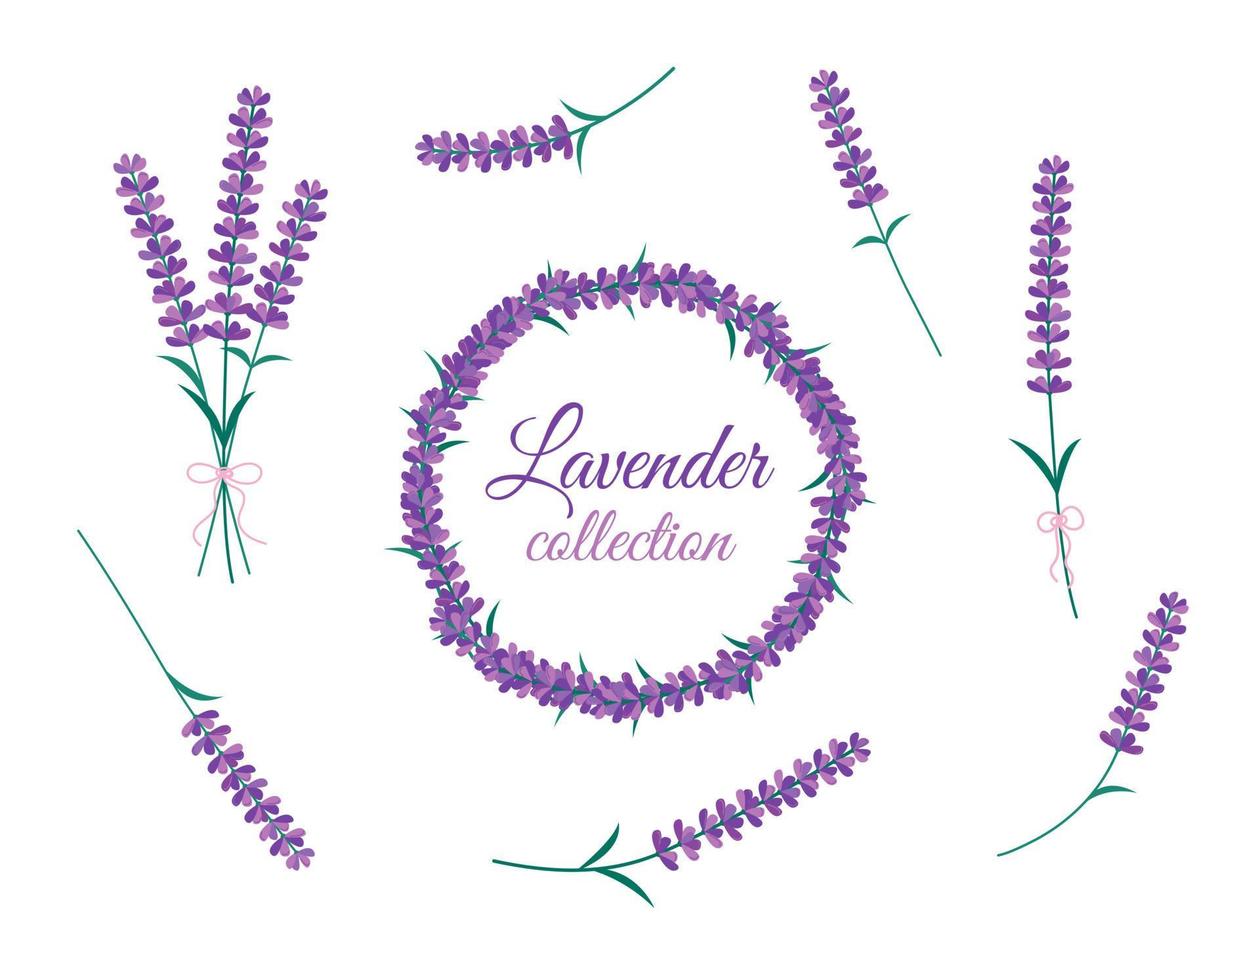 lavendel bloemen geïsoleerde set. vector collectie van bloeiende lavendel bloemen. boeket, rond frame en ontwerp bloemenelementen op witte backround